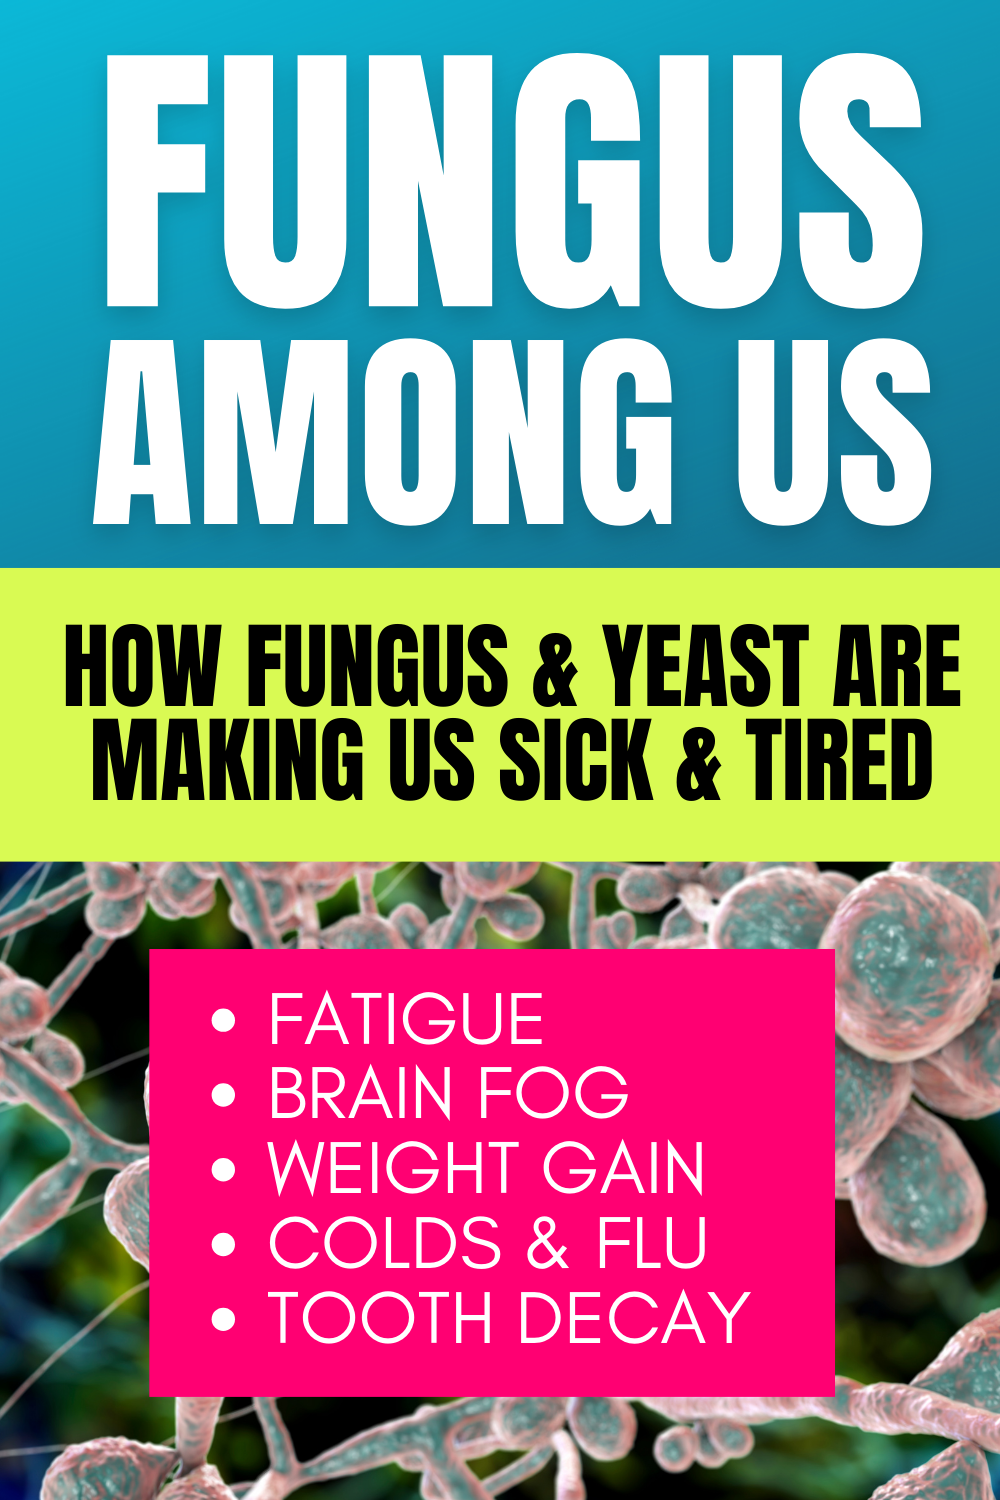 Fungus Among Us (Video)